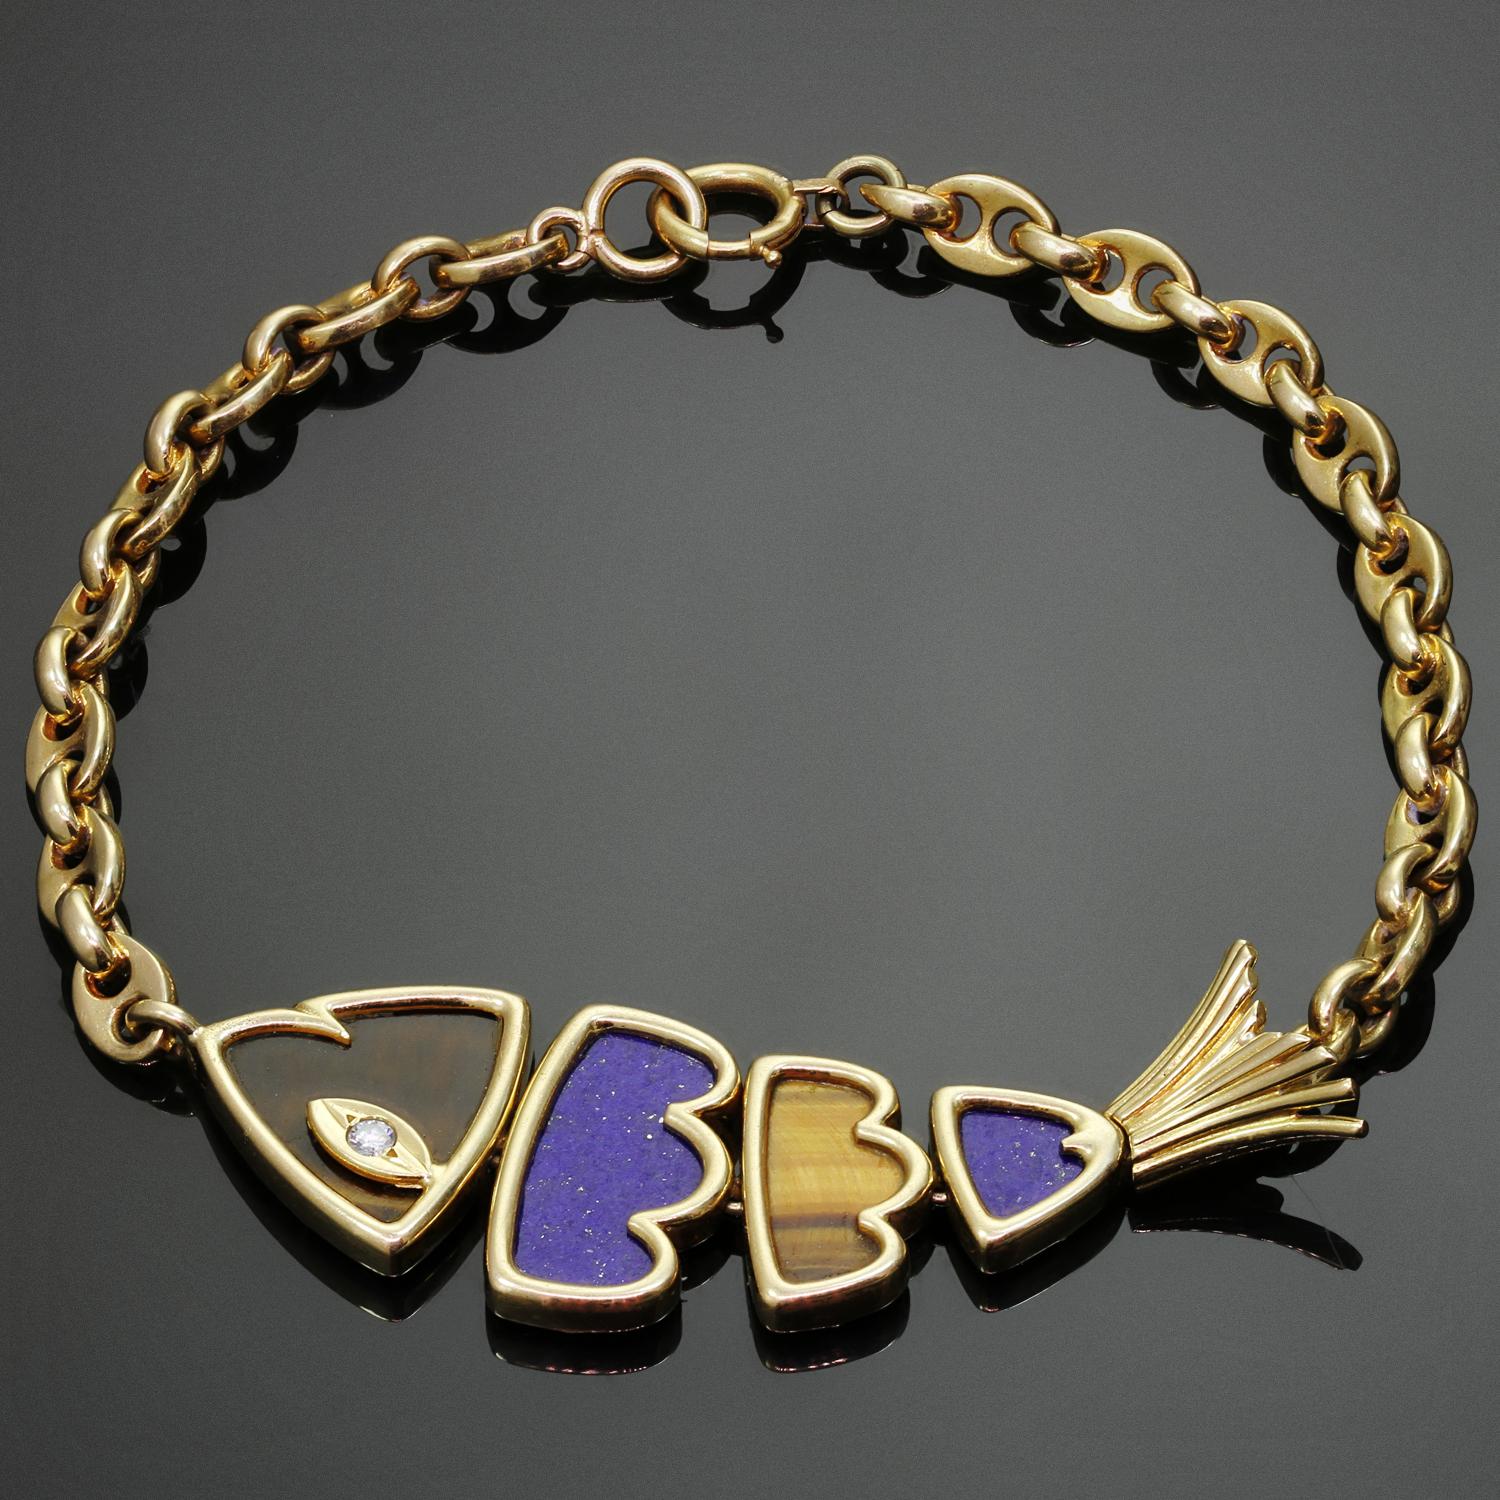 Ce fabuleux bracelet vintage Van Cleef & Arpels en or jaune 18 carats présente une breloque en forme de poisson incrustée de lapis-lazuli et d'œil de tigre et sertie d'un diamant rond taille brillant d'un poids estimé à 0,03 carat. Fabriqué en